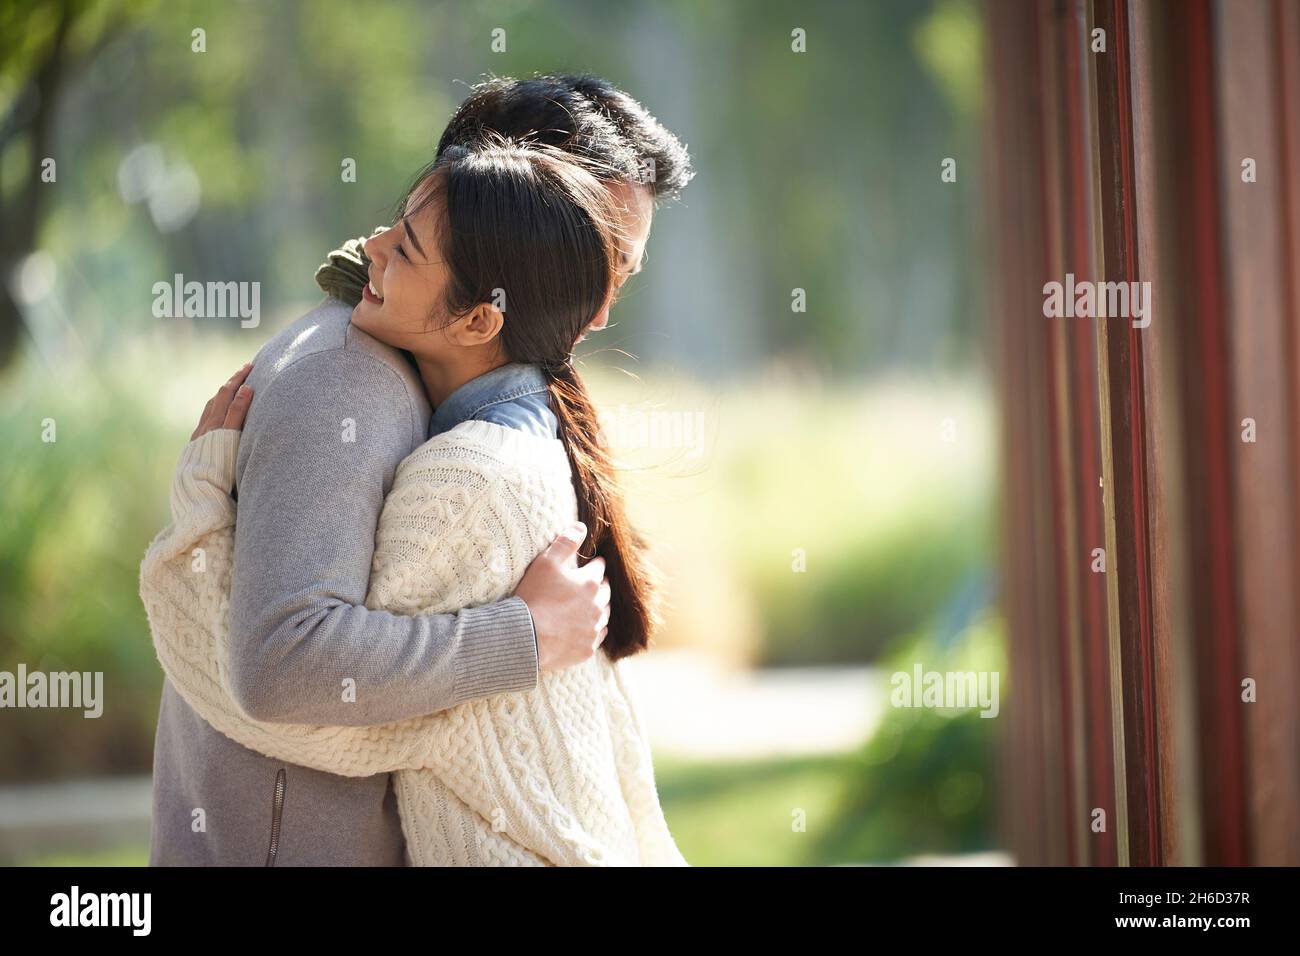 pareja asiática joven que data abrazando al aire libre en el parque Foto de stock